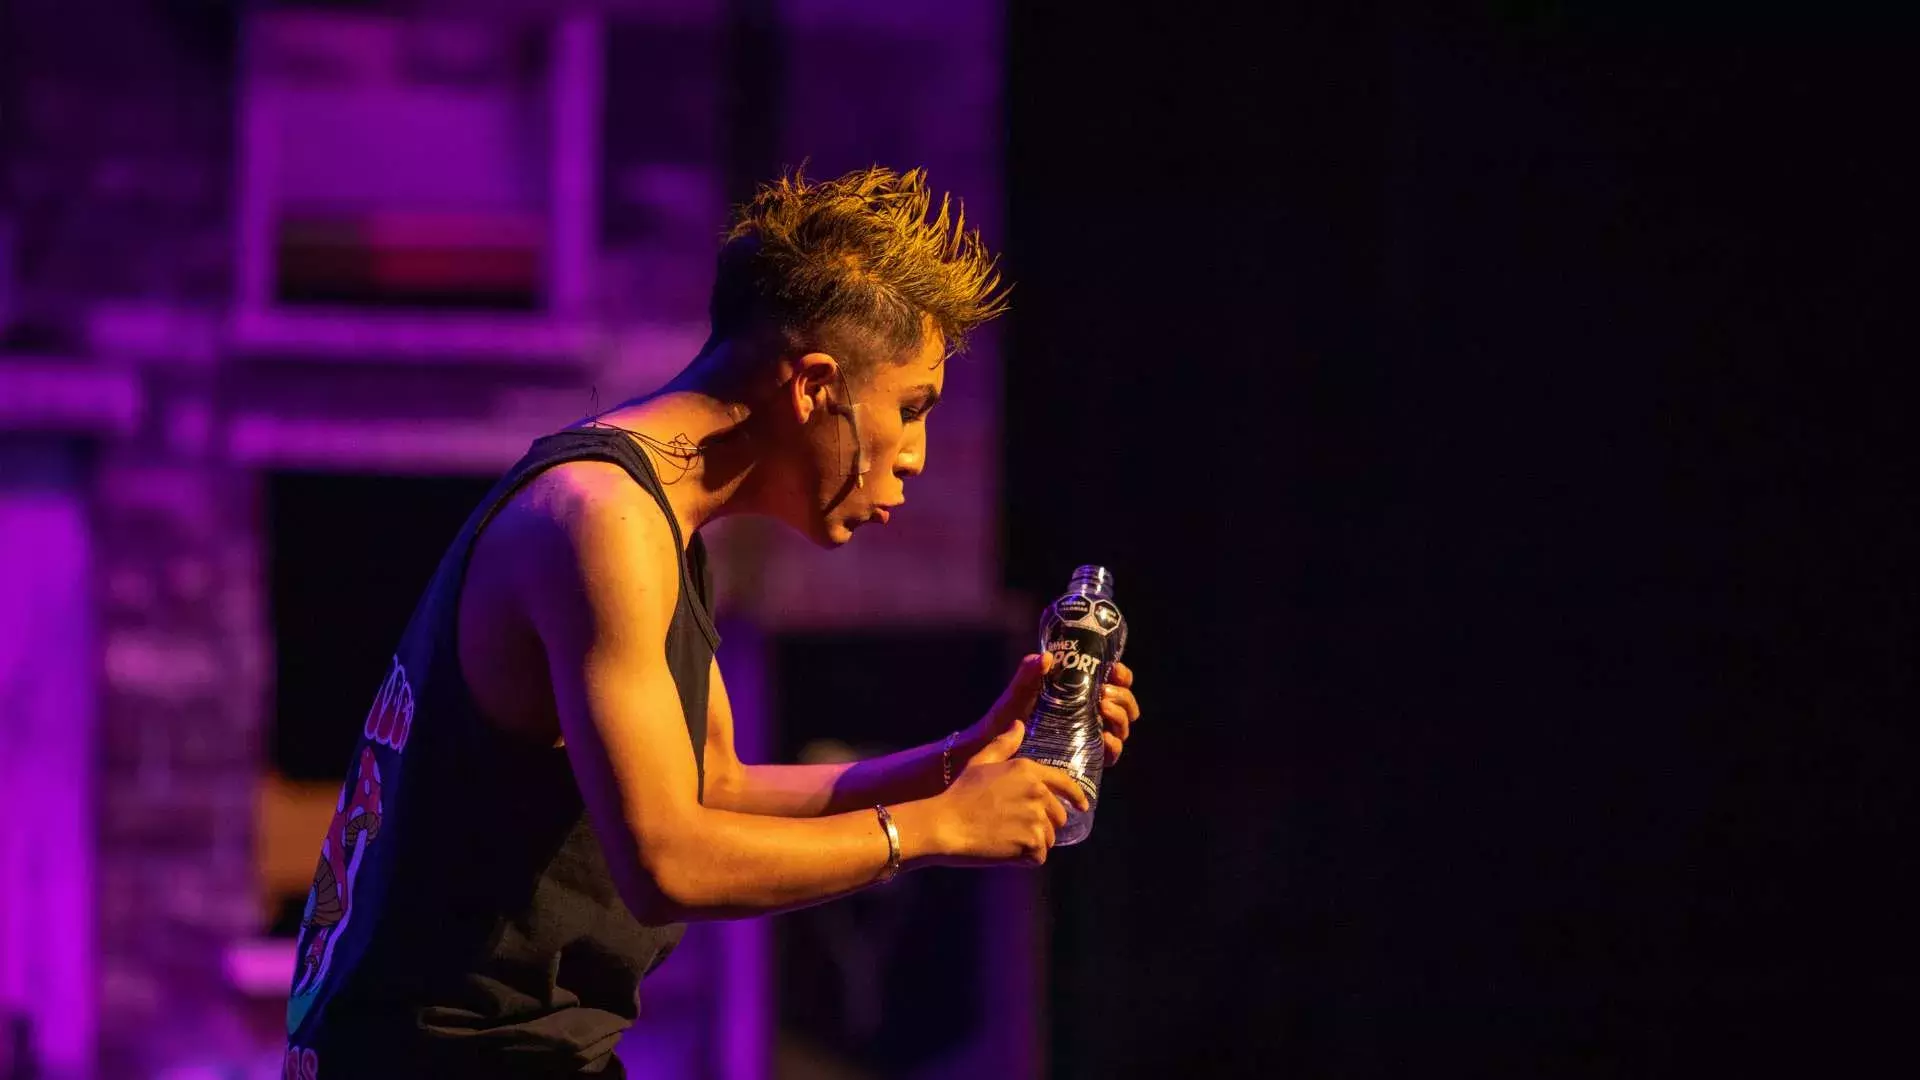 Alumno interpreta a "Chakas" uno de los personajes principales que sostiene una botella de plastico mientras actúa